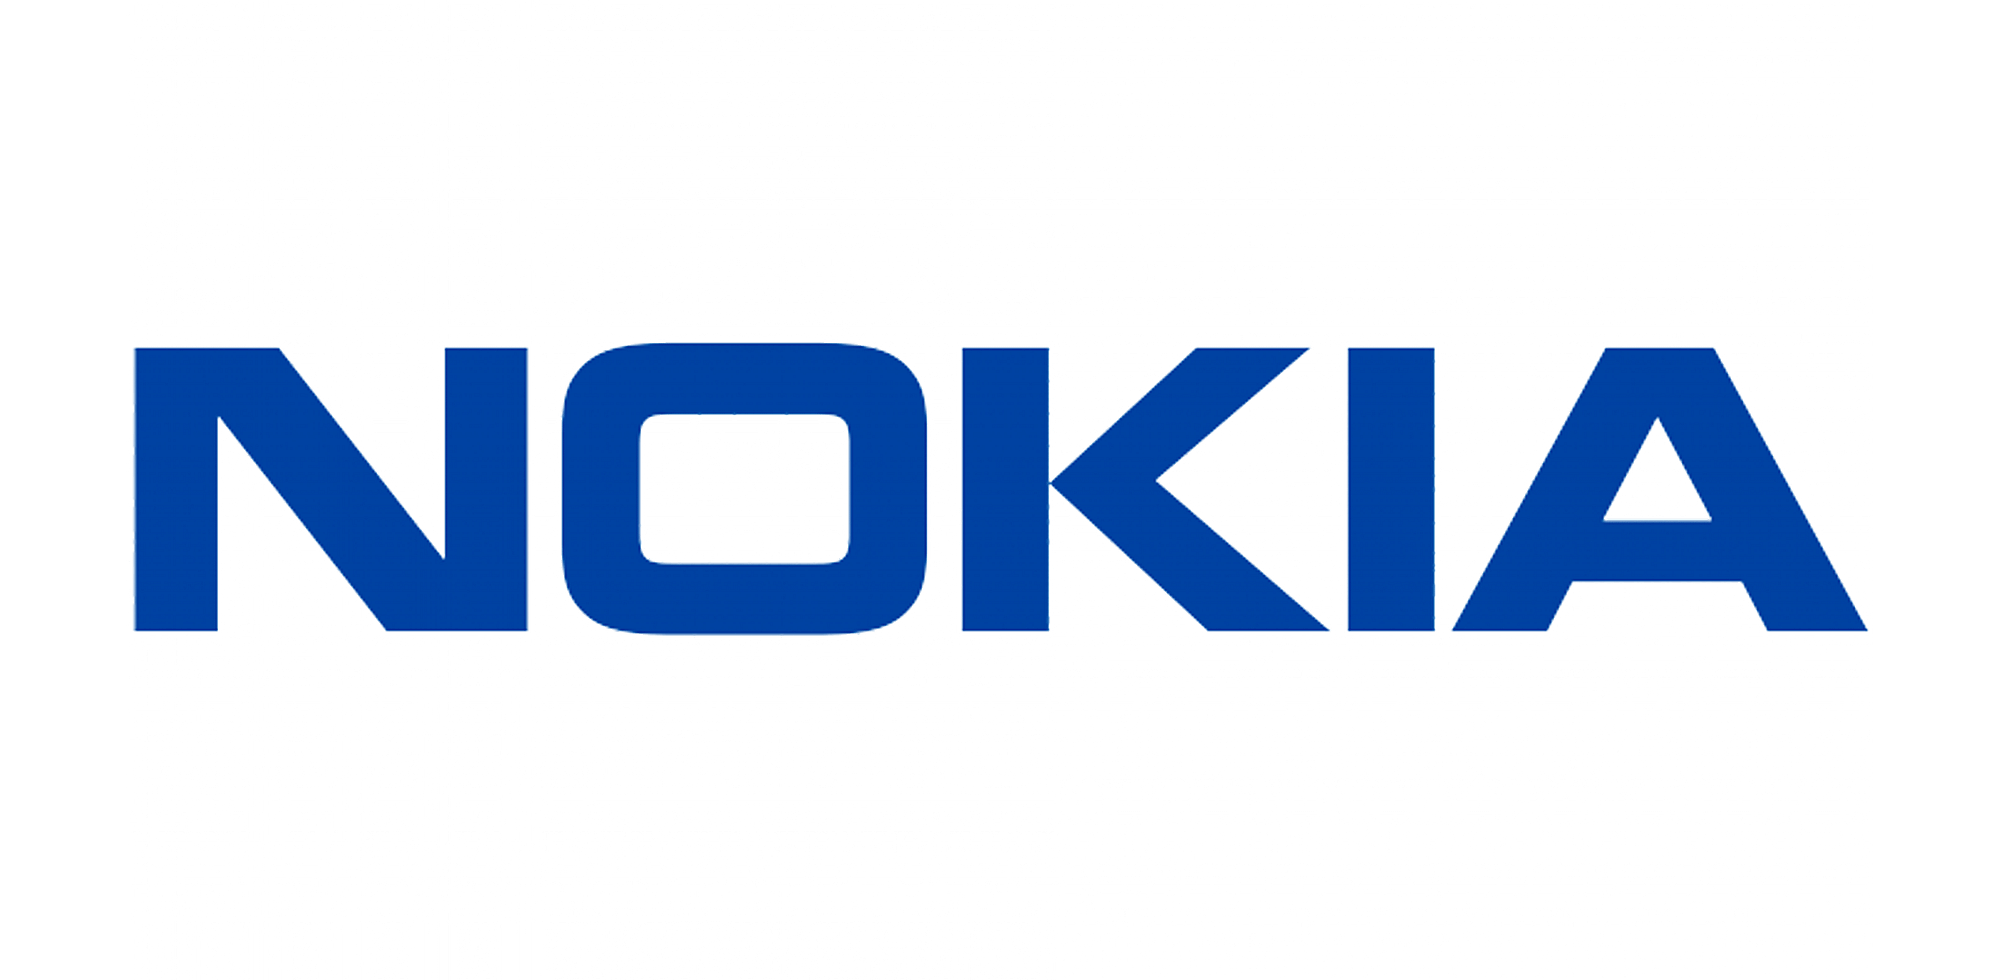 8. Nokia